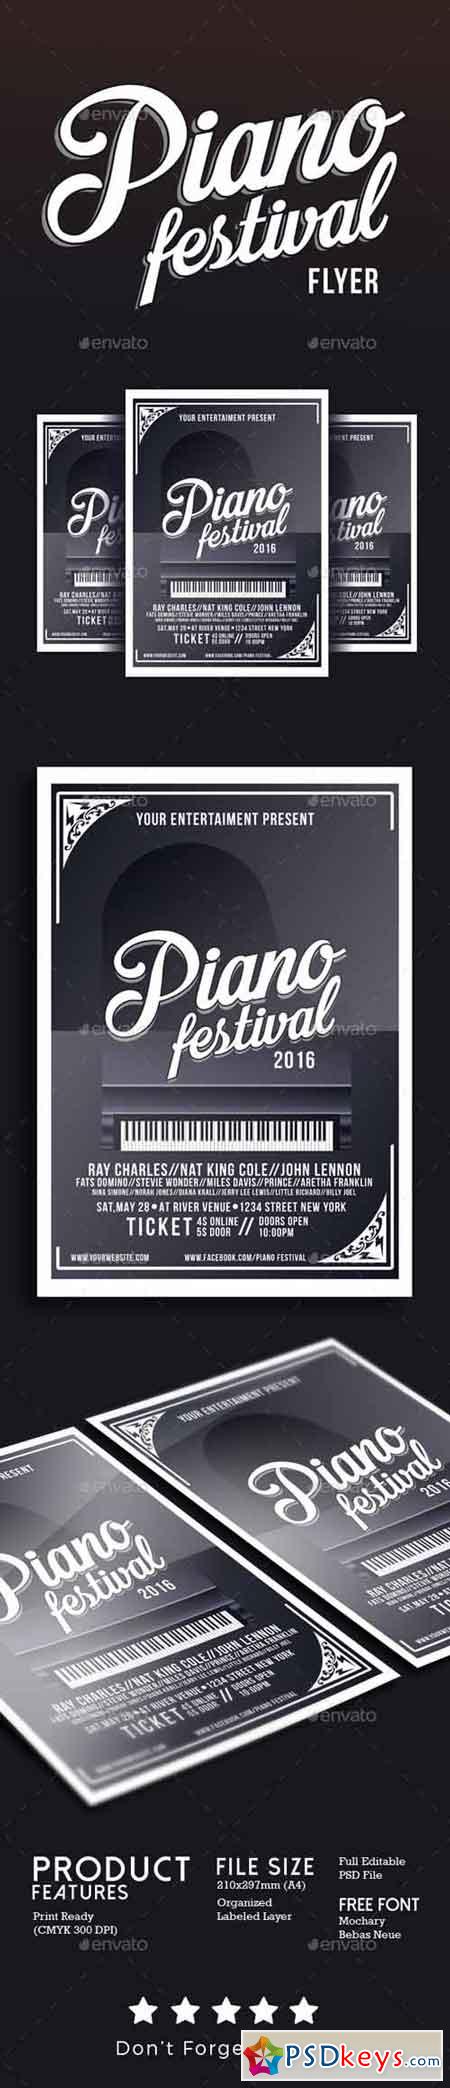 Piano Festival Flyer Template 17042507